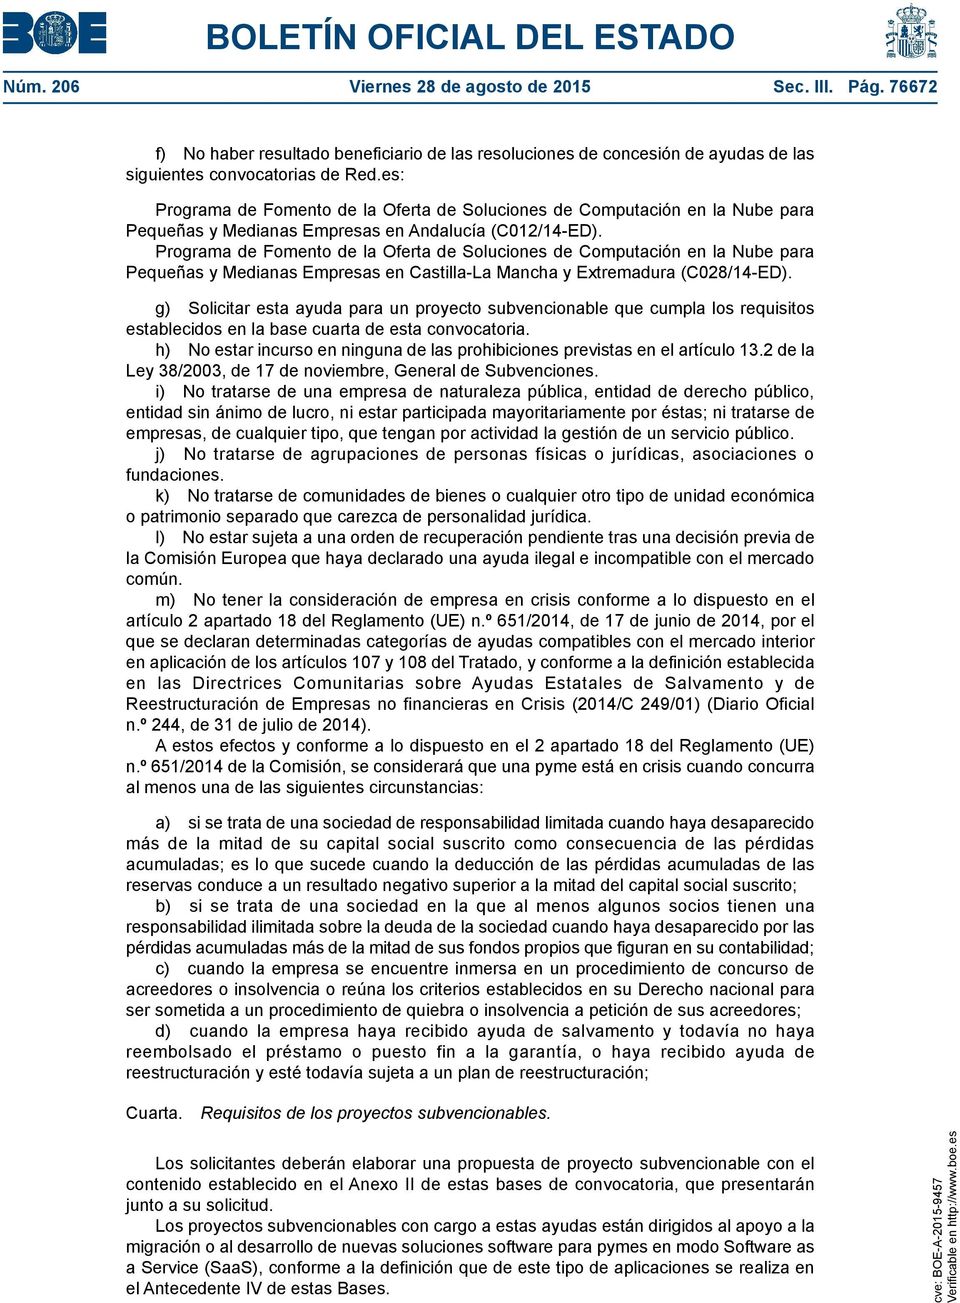 Programa de Fomento de la Oferta de Soluciones de Computación en la Nube para Pequeñas y Medianas Empresas en Castilla-La Mancha y Extremadura (C028/14-ED).